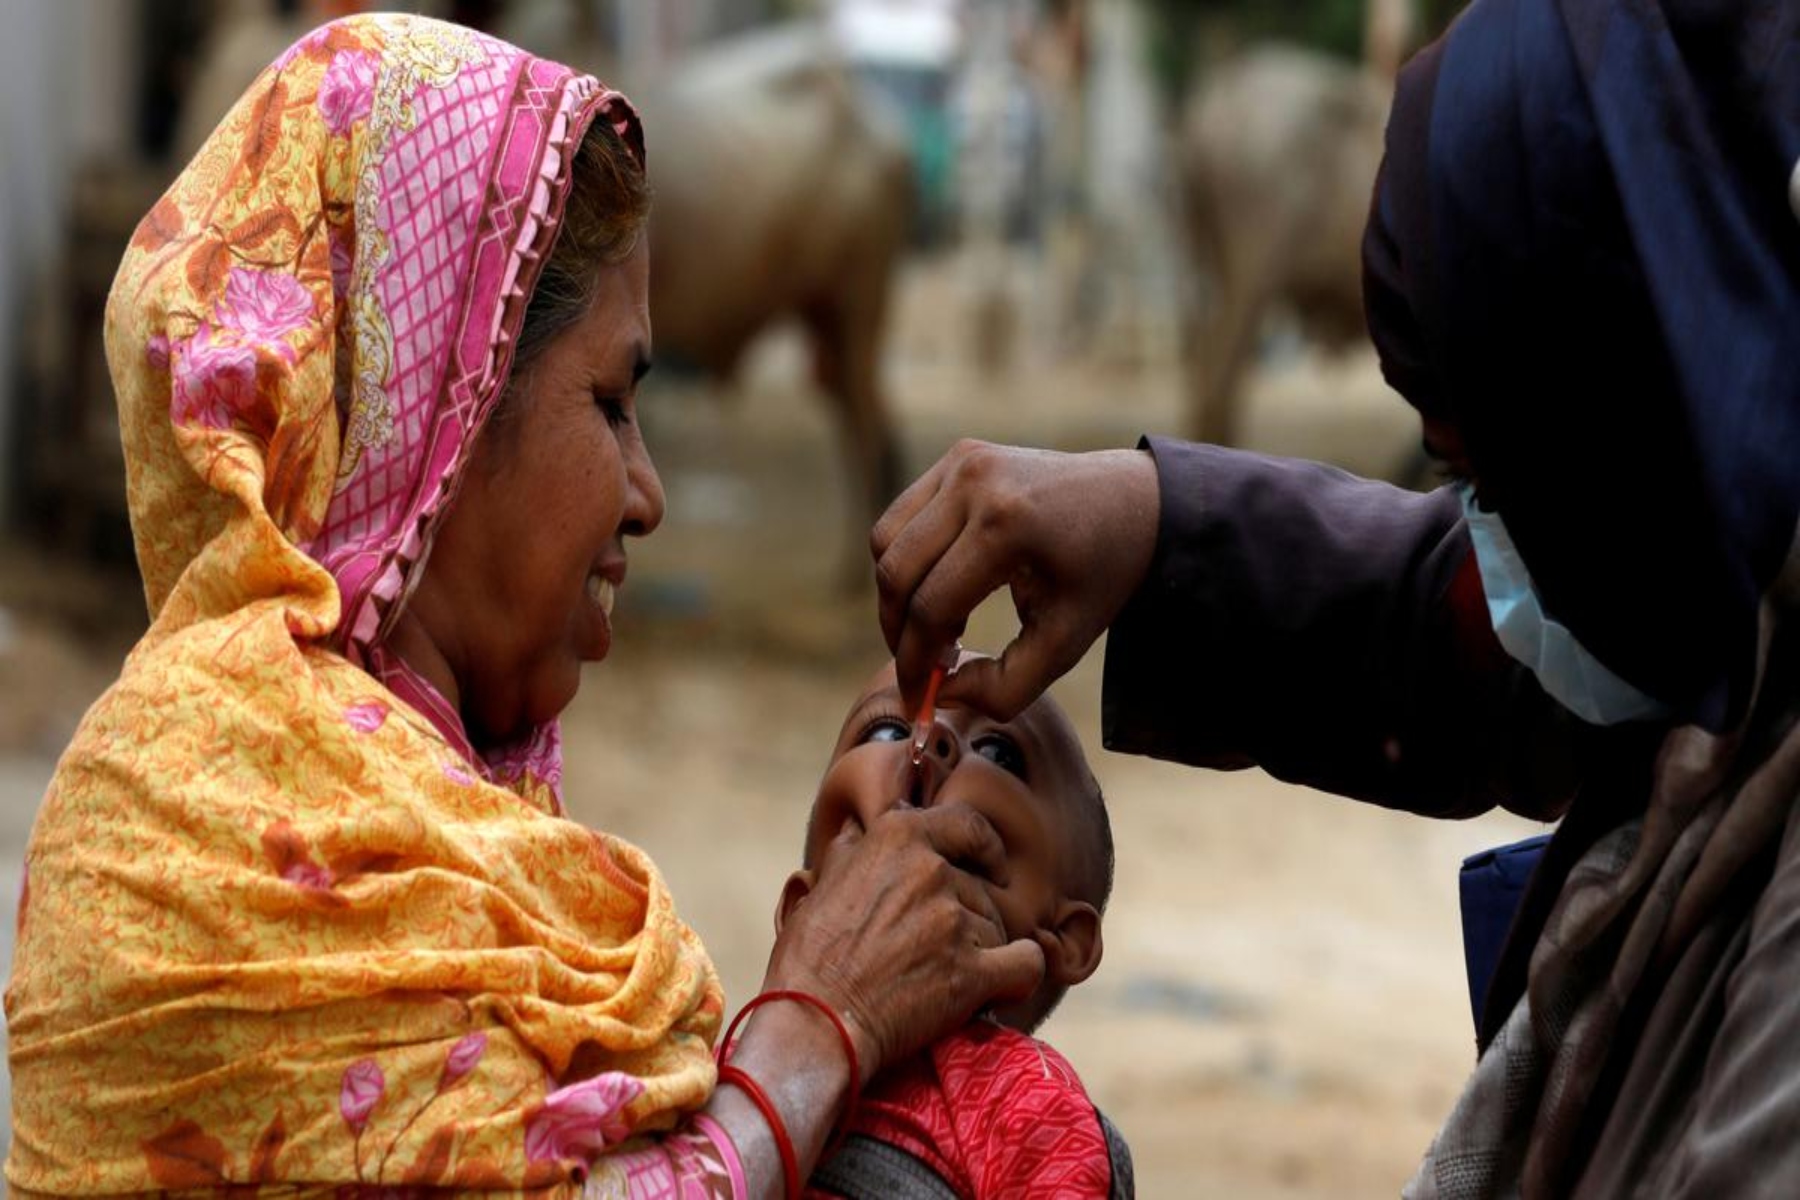 Πακιστάν πολιομυελίτιδα: Η χώρα εγκαινιάζει εκστρατεία κατά της πολιομυελίτιδας εν μέσω Covid